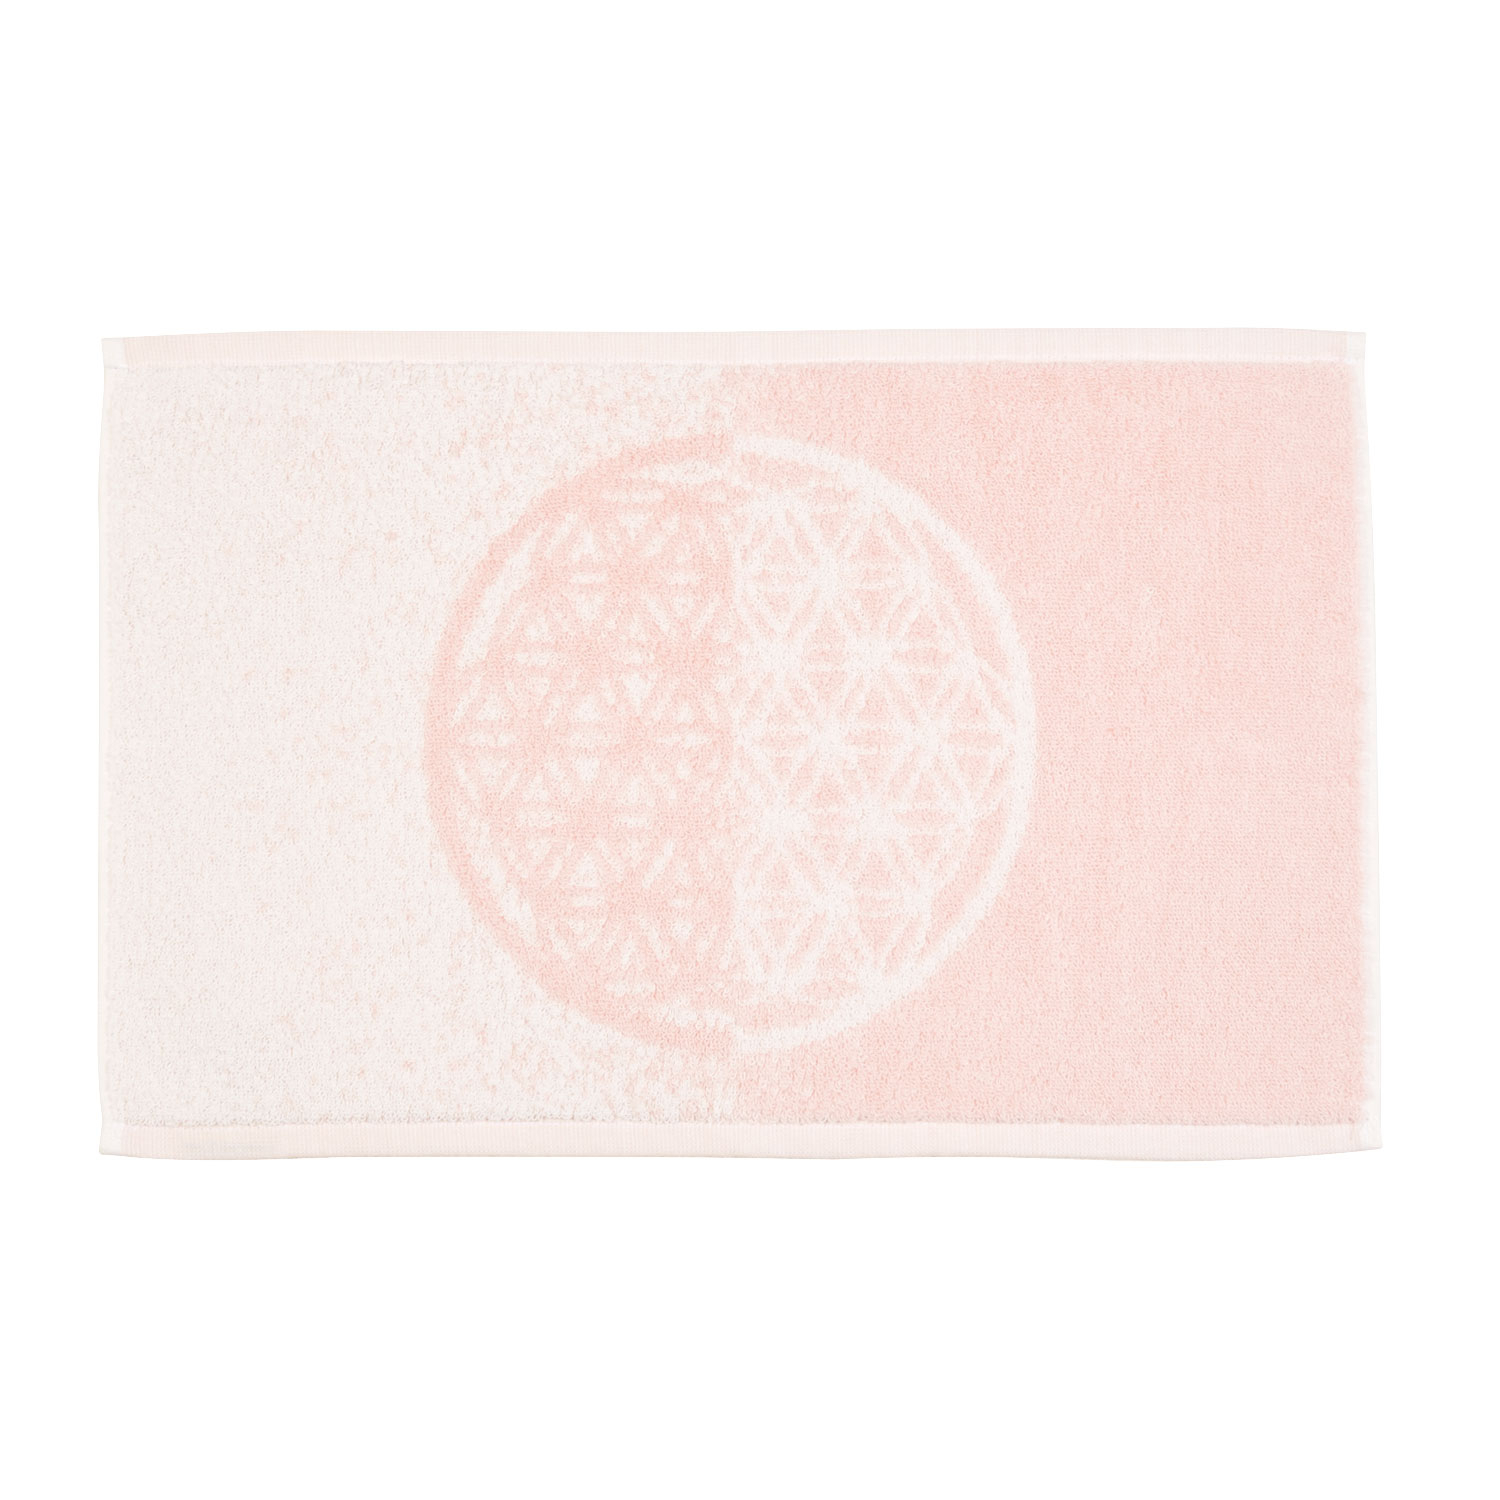 Gästehandtuch “Blume des Lebens”, weiß/rosa, Produktbild 1